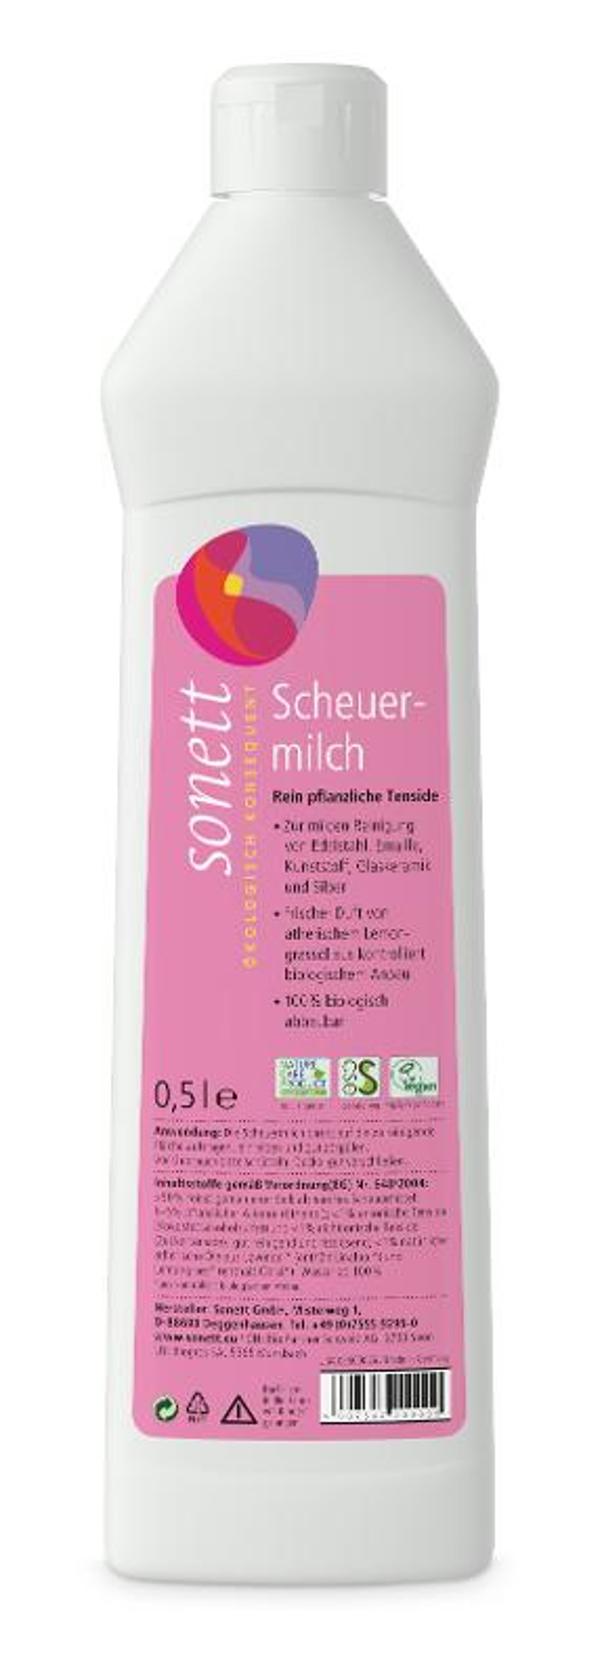 Produktfoto zu Scheuermilch 0,5 L